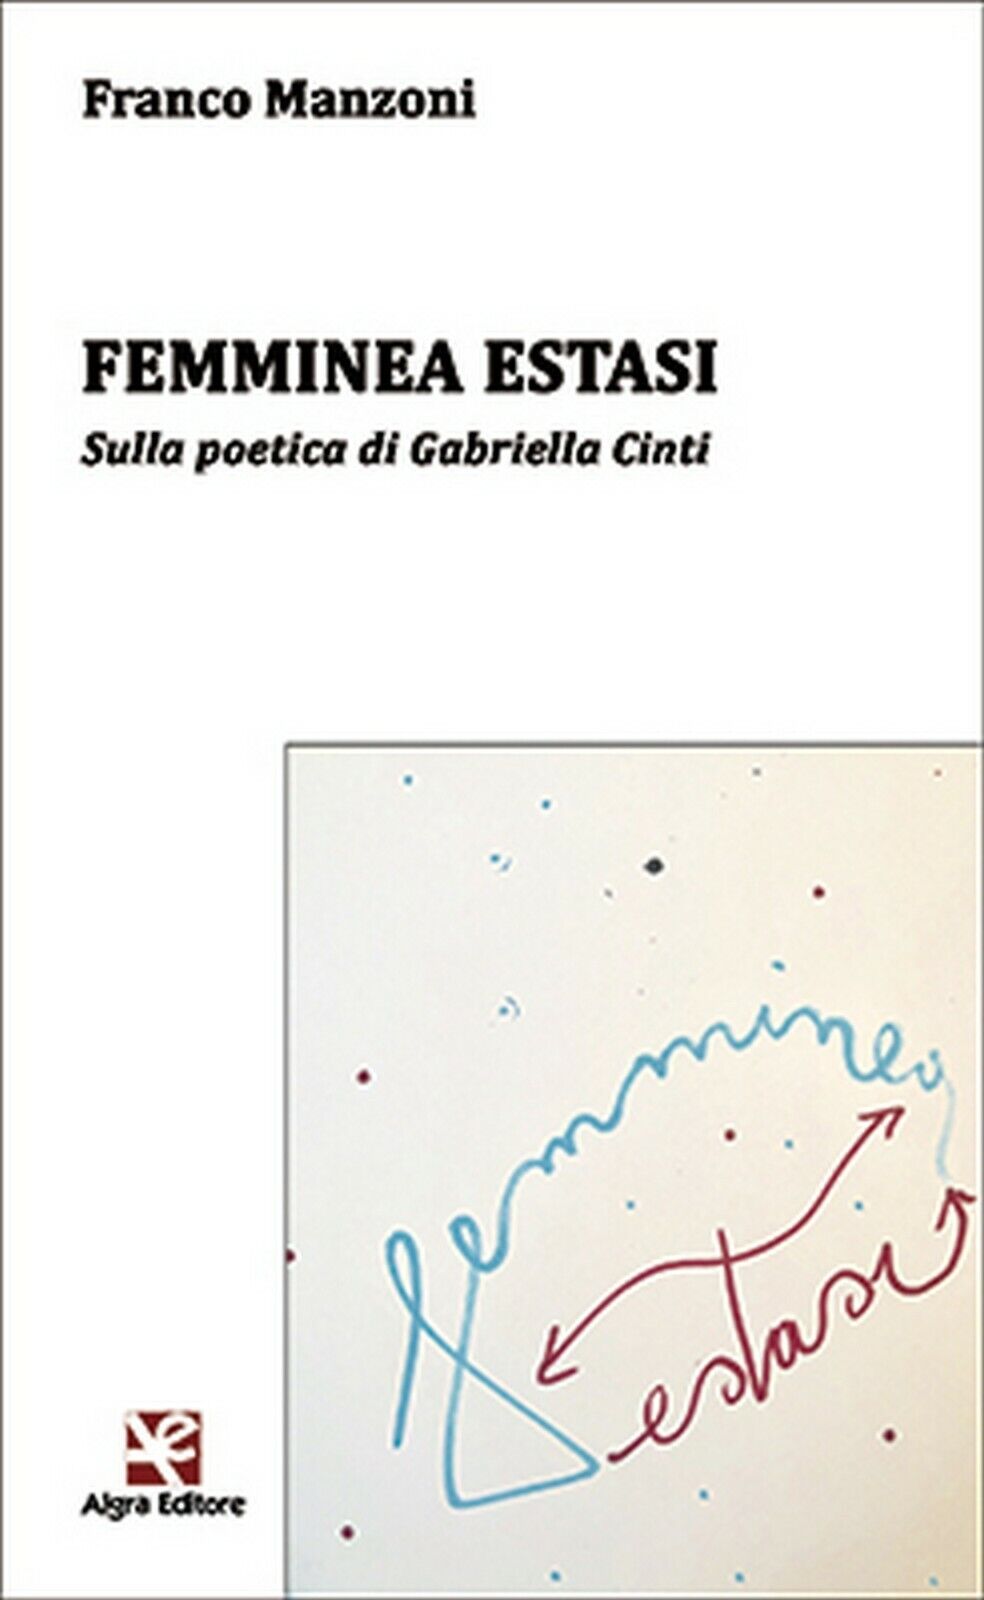 Femminea estasi  di Franco Manzoni,  Algra Editore